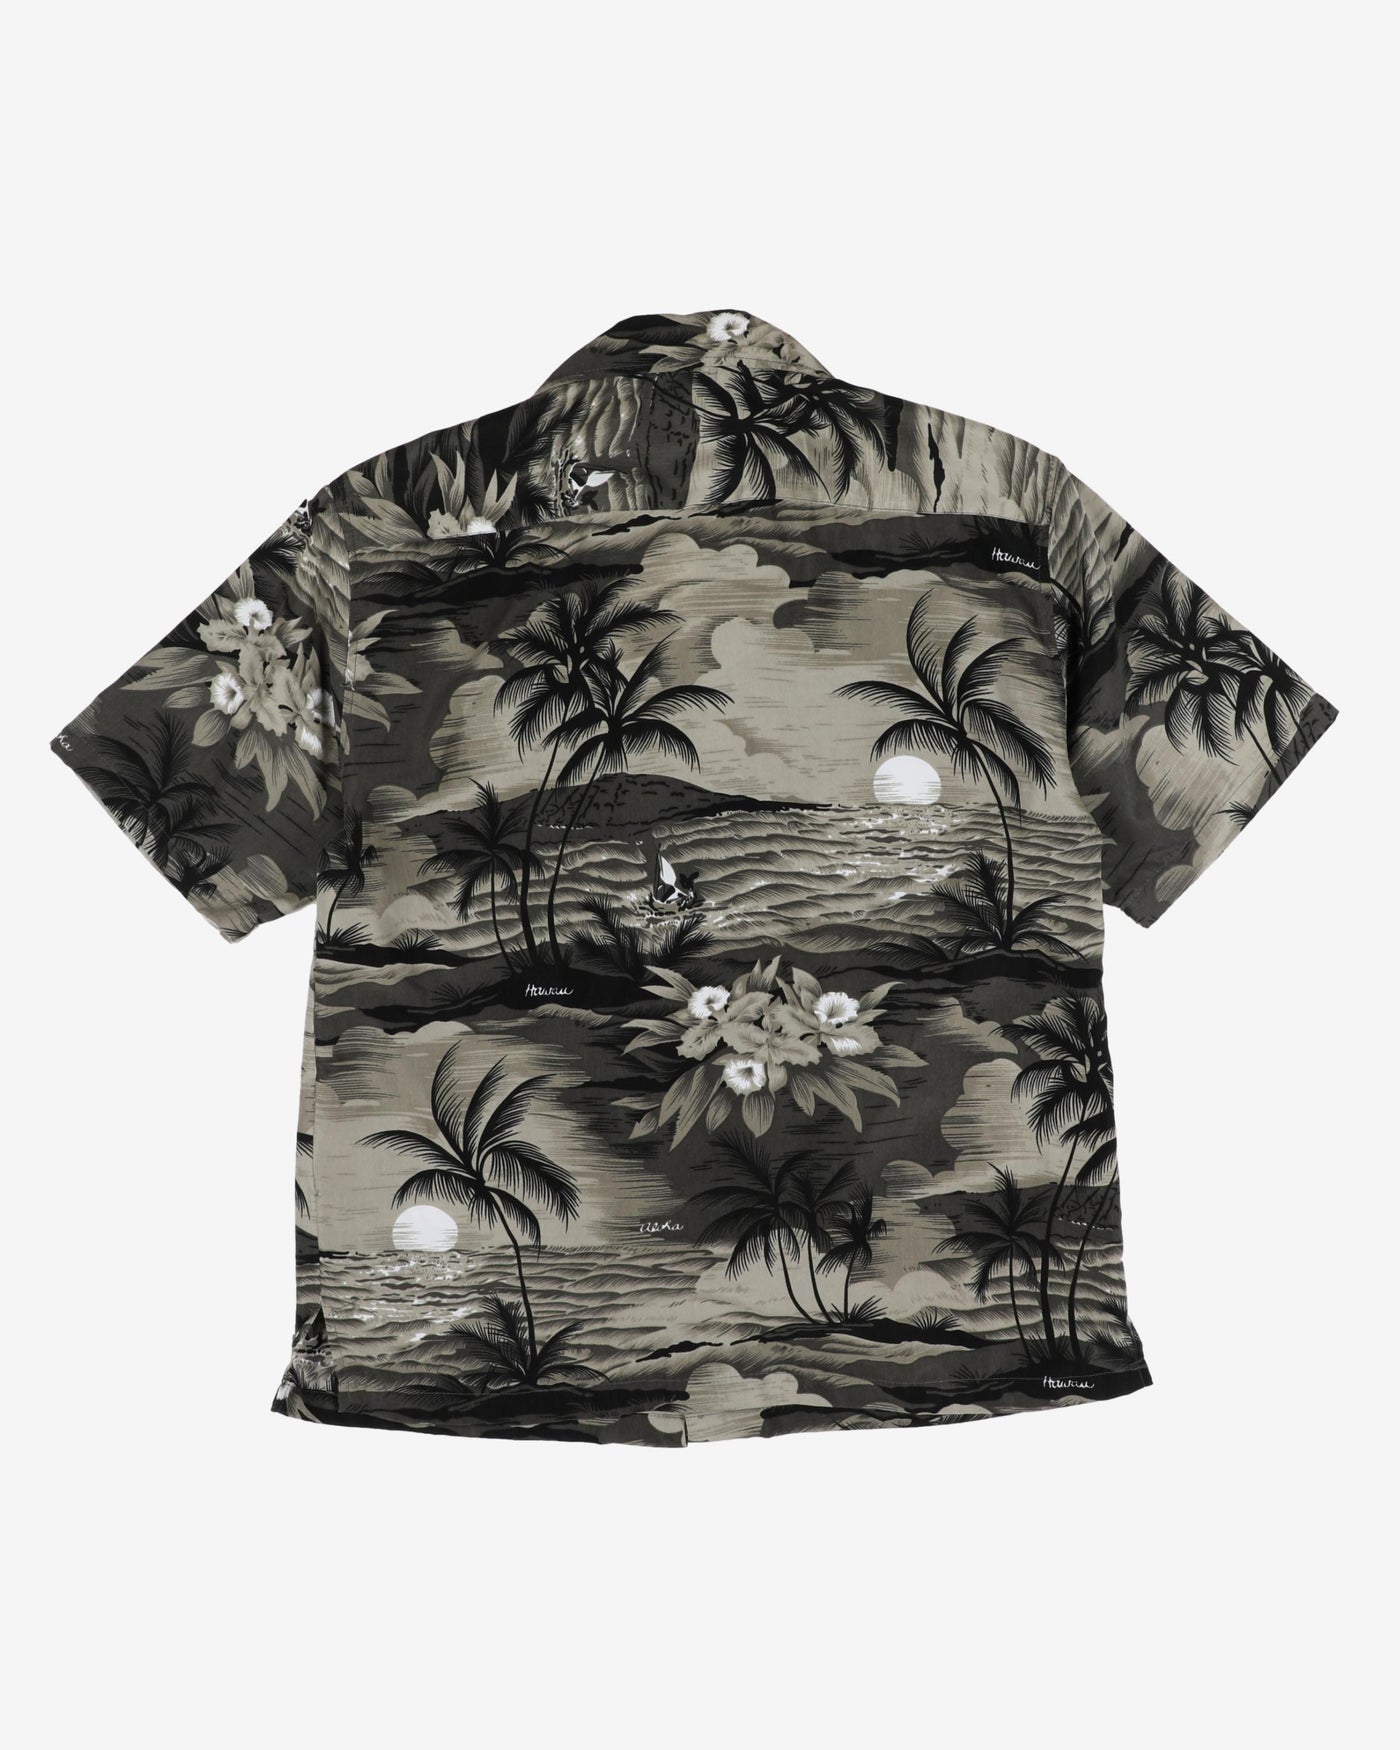 Vintage Maui Maui Black Tropical Patterned Hawaiian Shirt - L